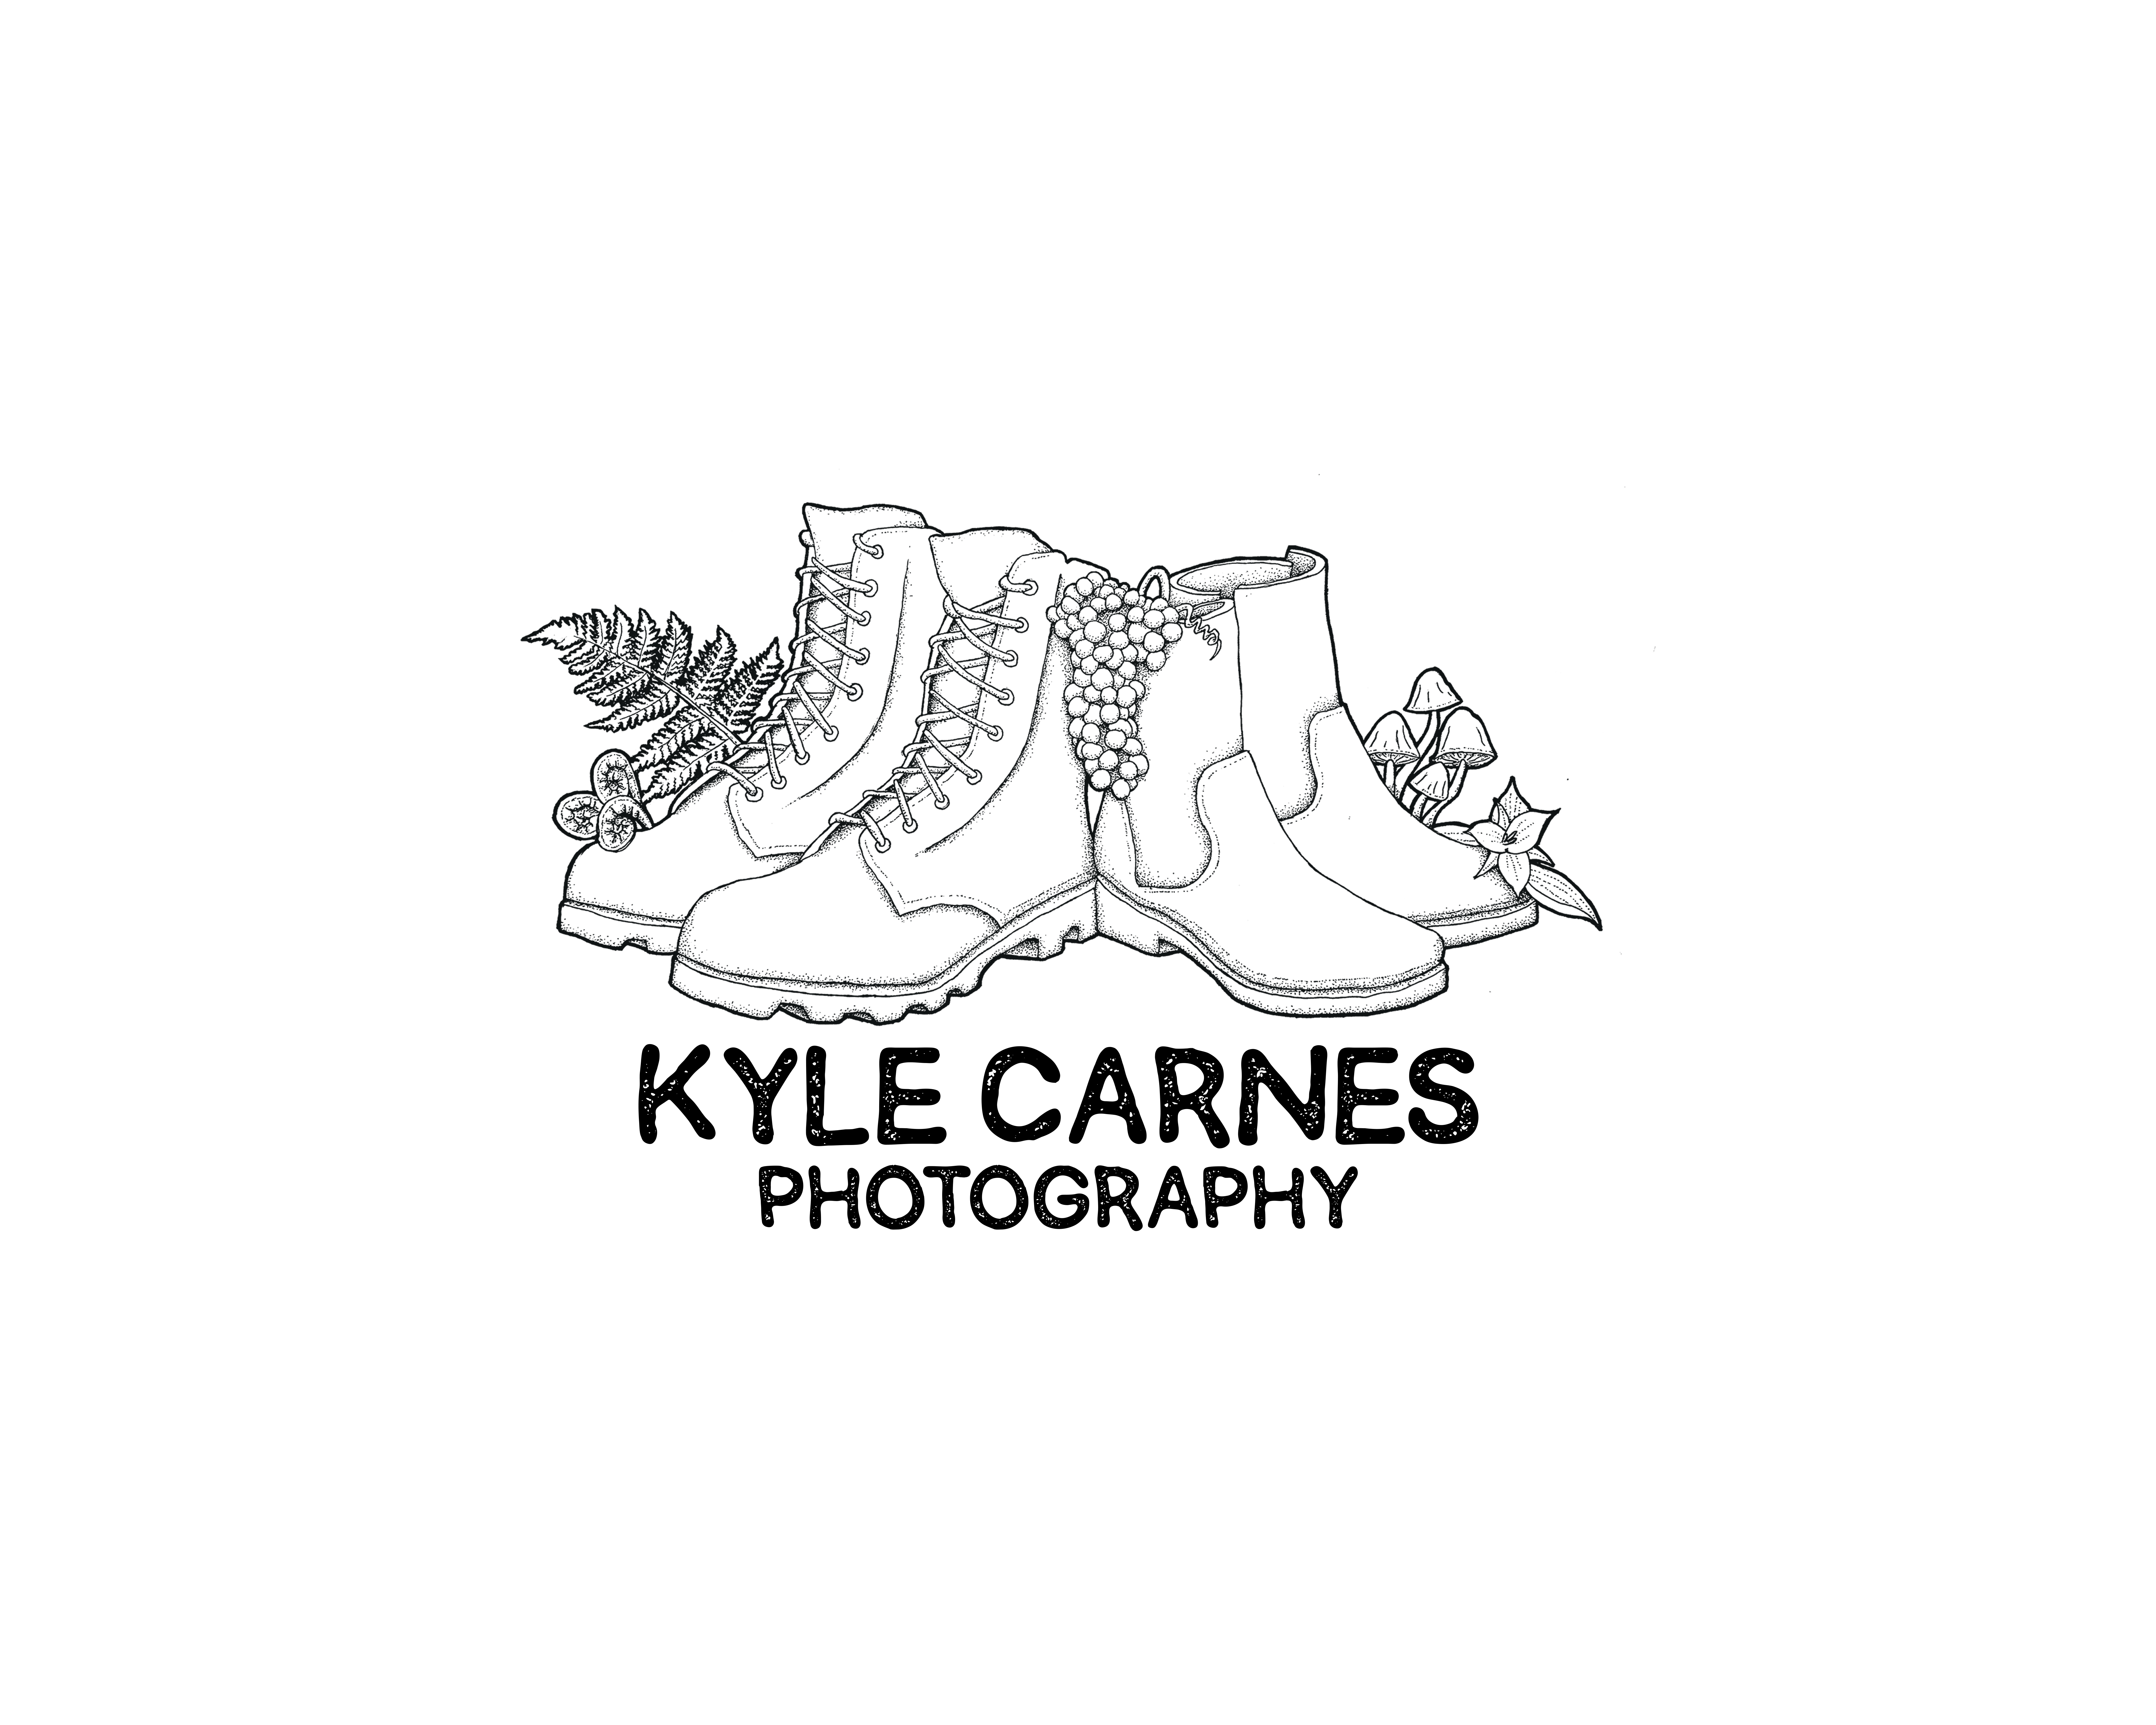 Kyle Carnes